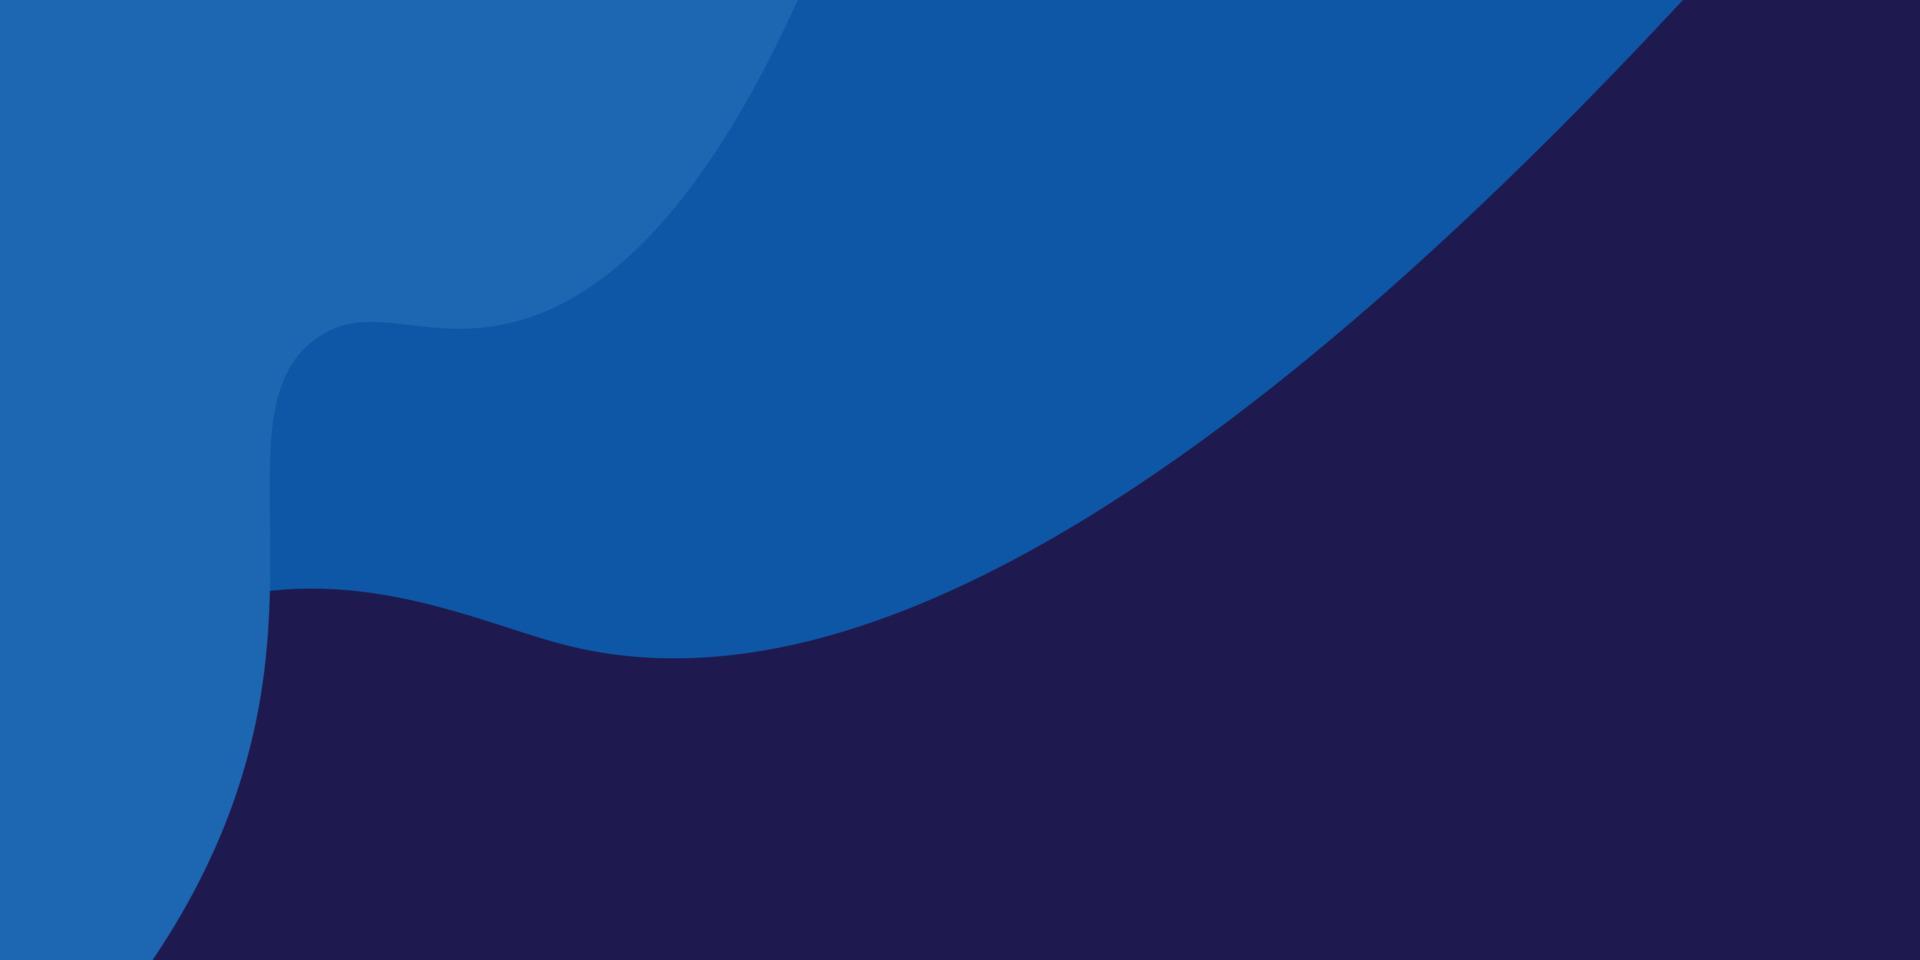 Papierschicht blauer abstrakter Hintergrund. blauer abstrakter gebrauch für geschäft, unternehmen, institution, plakat, schablone, festlich, seminar, blauer dynamischer futuristischer abstrakter vektor eps10, illustration